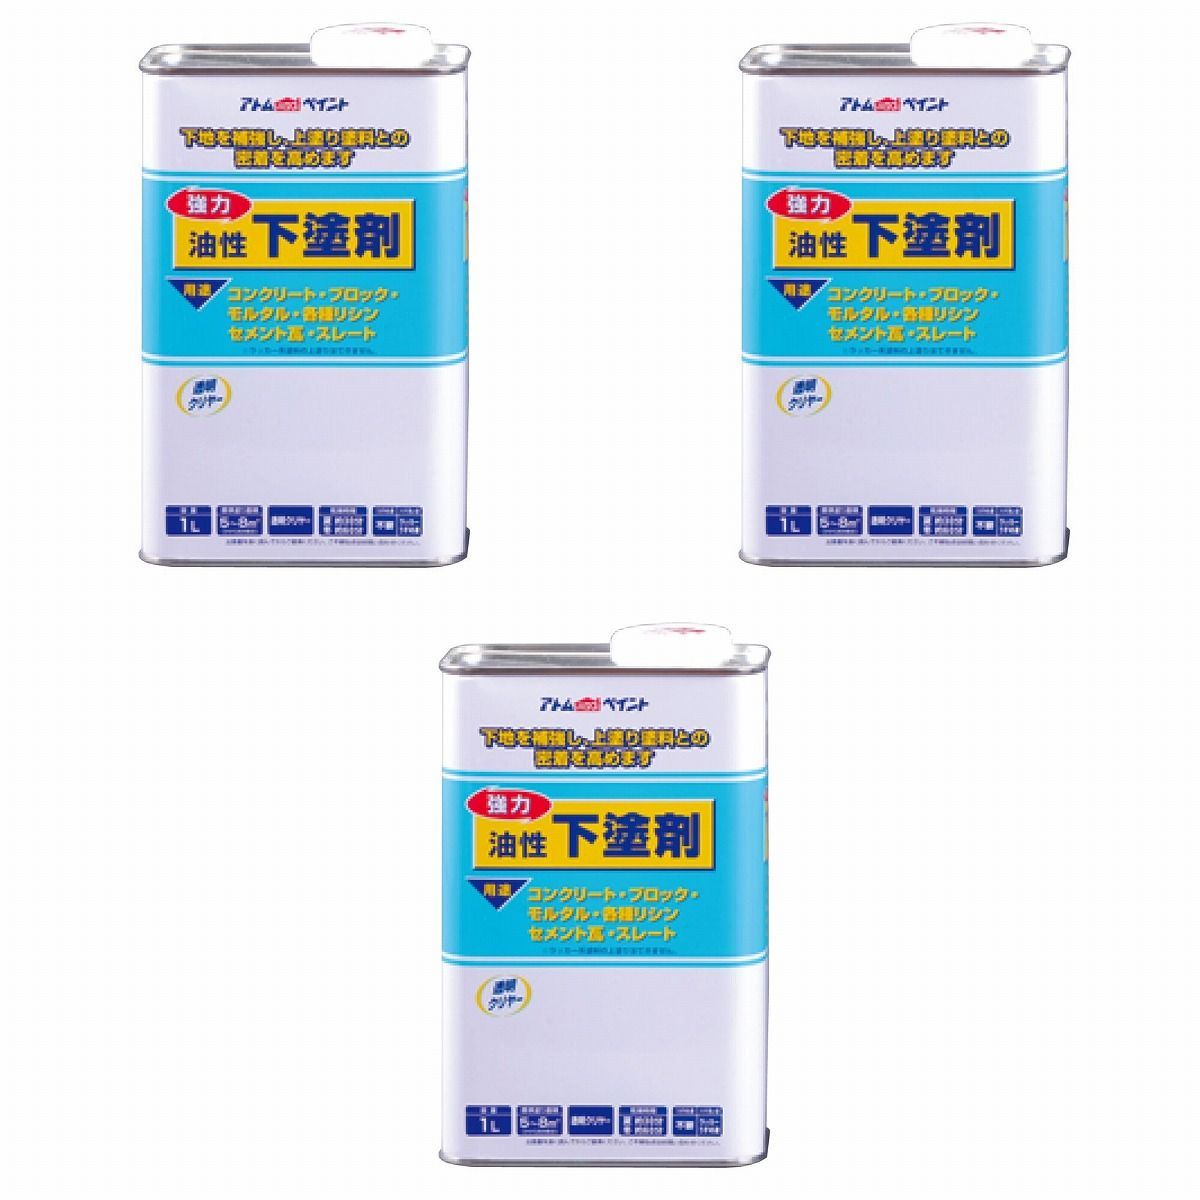 アトムハウスペイント 油性下塗剤 1L 3缶セット【BT-56】 バックティースショップ メルカリ